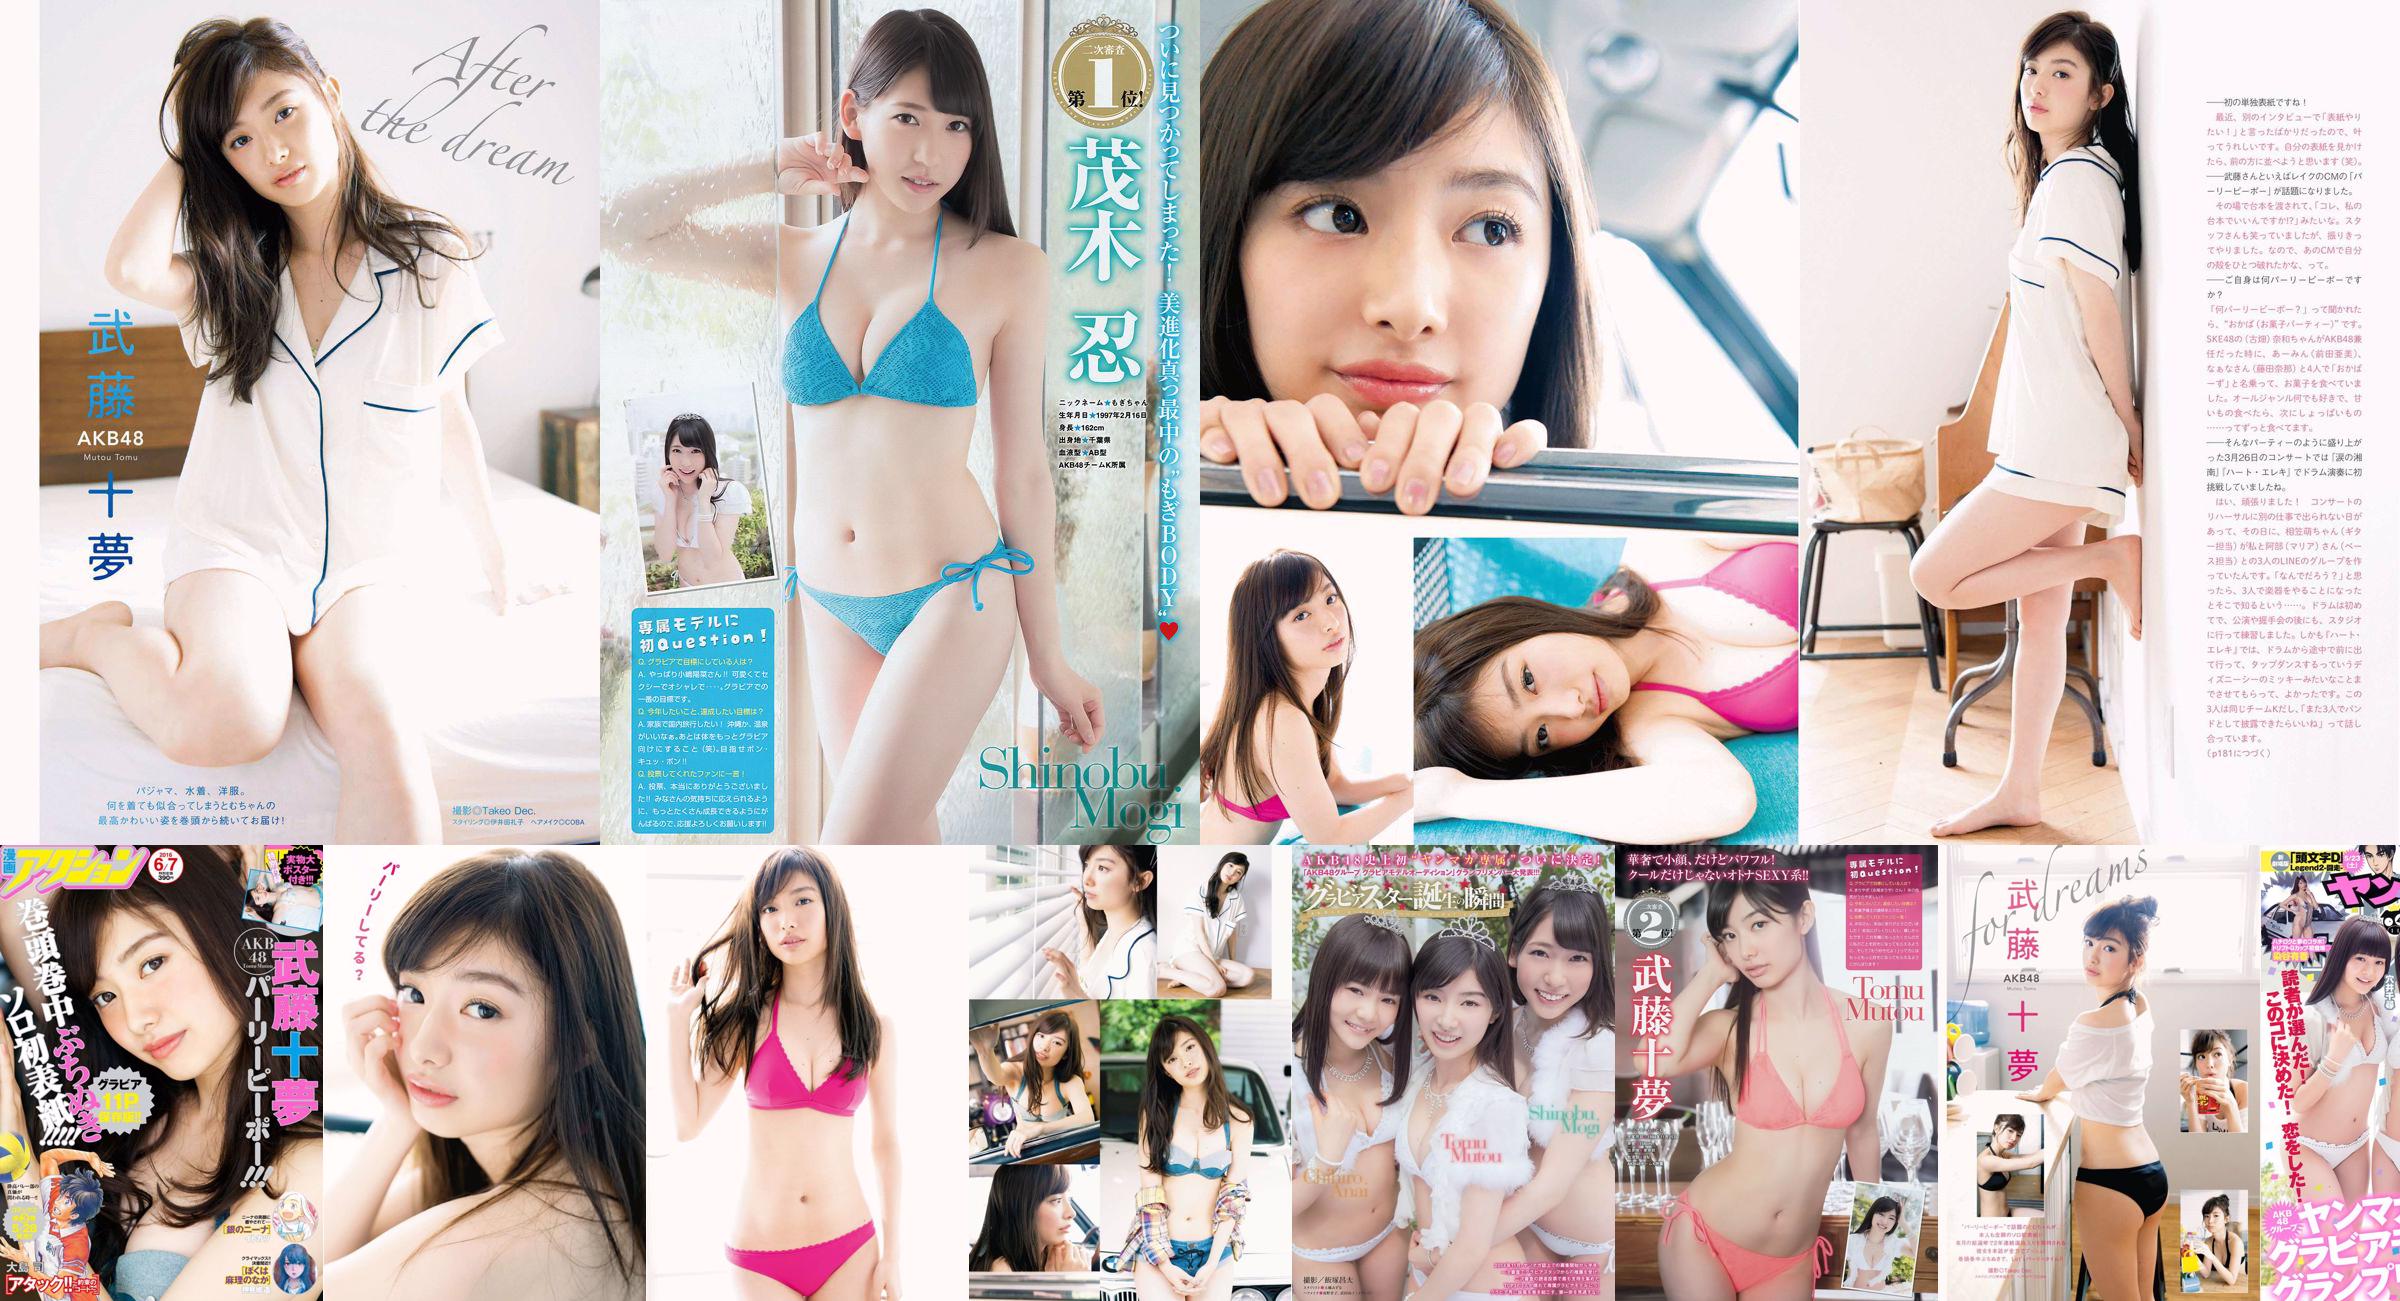 [Young Magazine] Tomu Muto Shinobu Mogi Chihiro Anai Erina Mano Yuka Someya 2015 nr 25 Zdjęcie No.5bbbf4 Strona 1